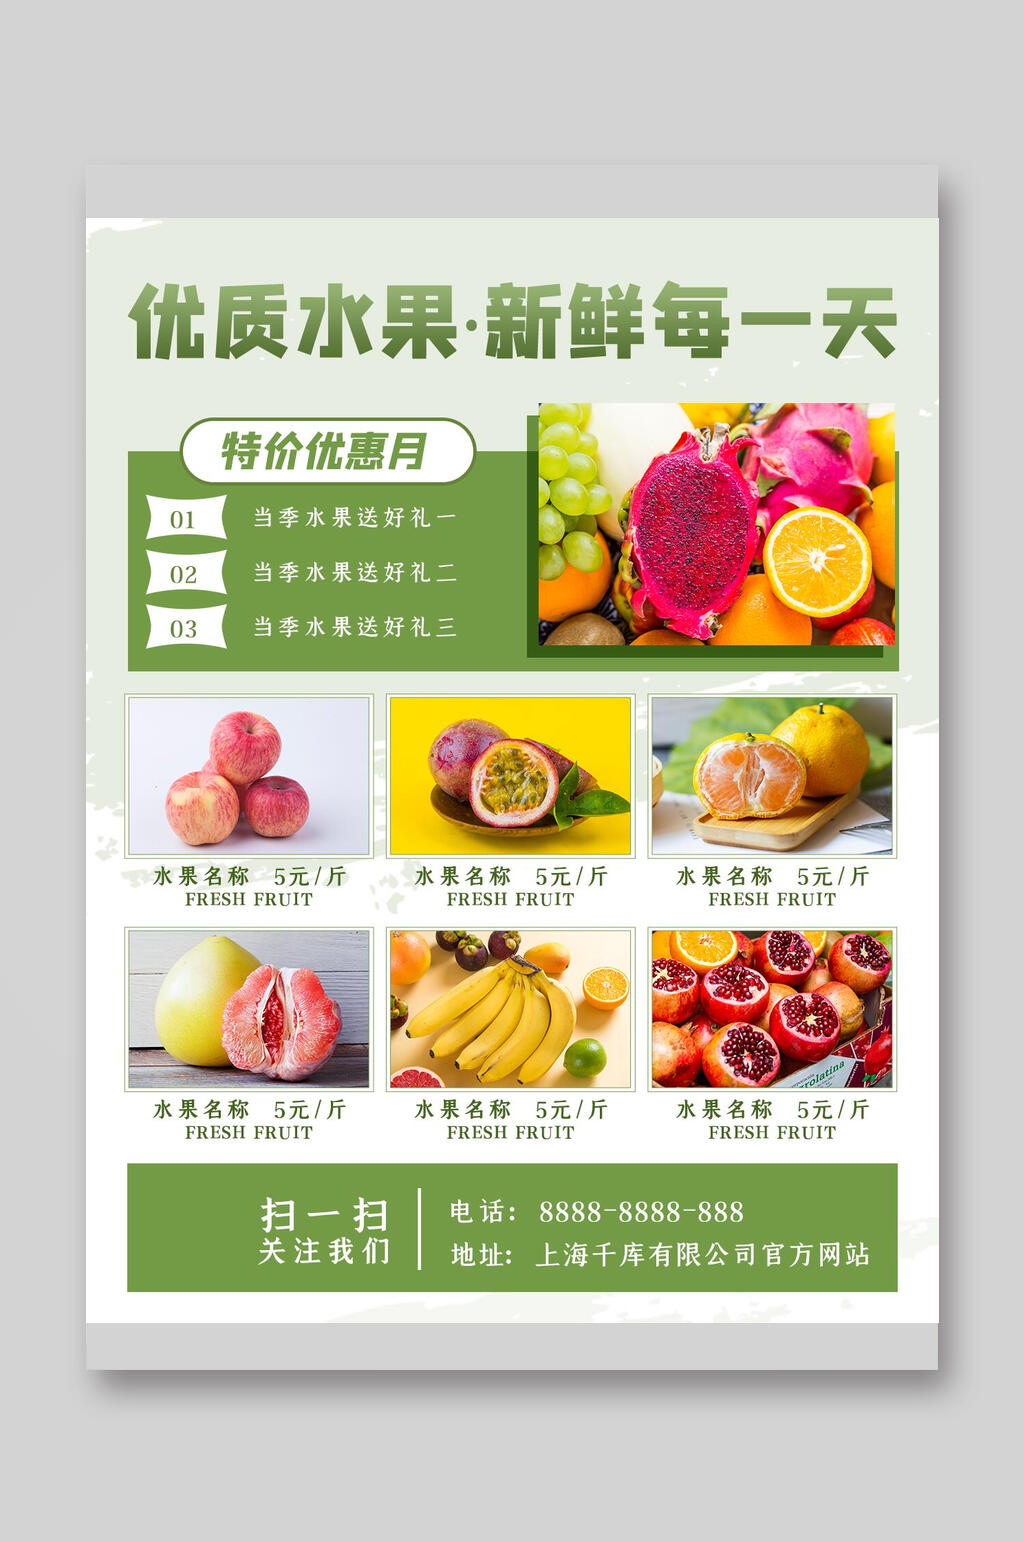 dm宣传单立即下载水果店铺促销宣传单简洁水果茶饮品菜单单页宣传单